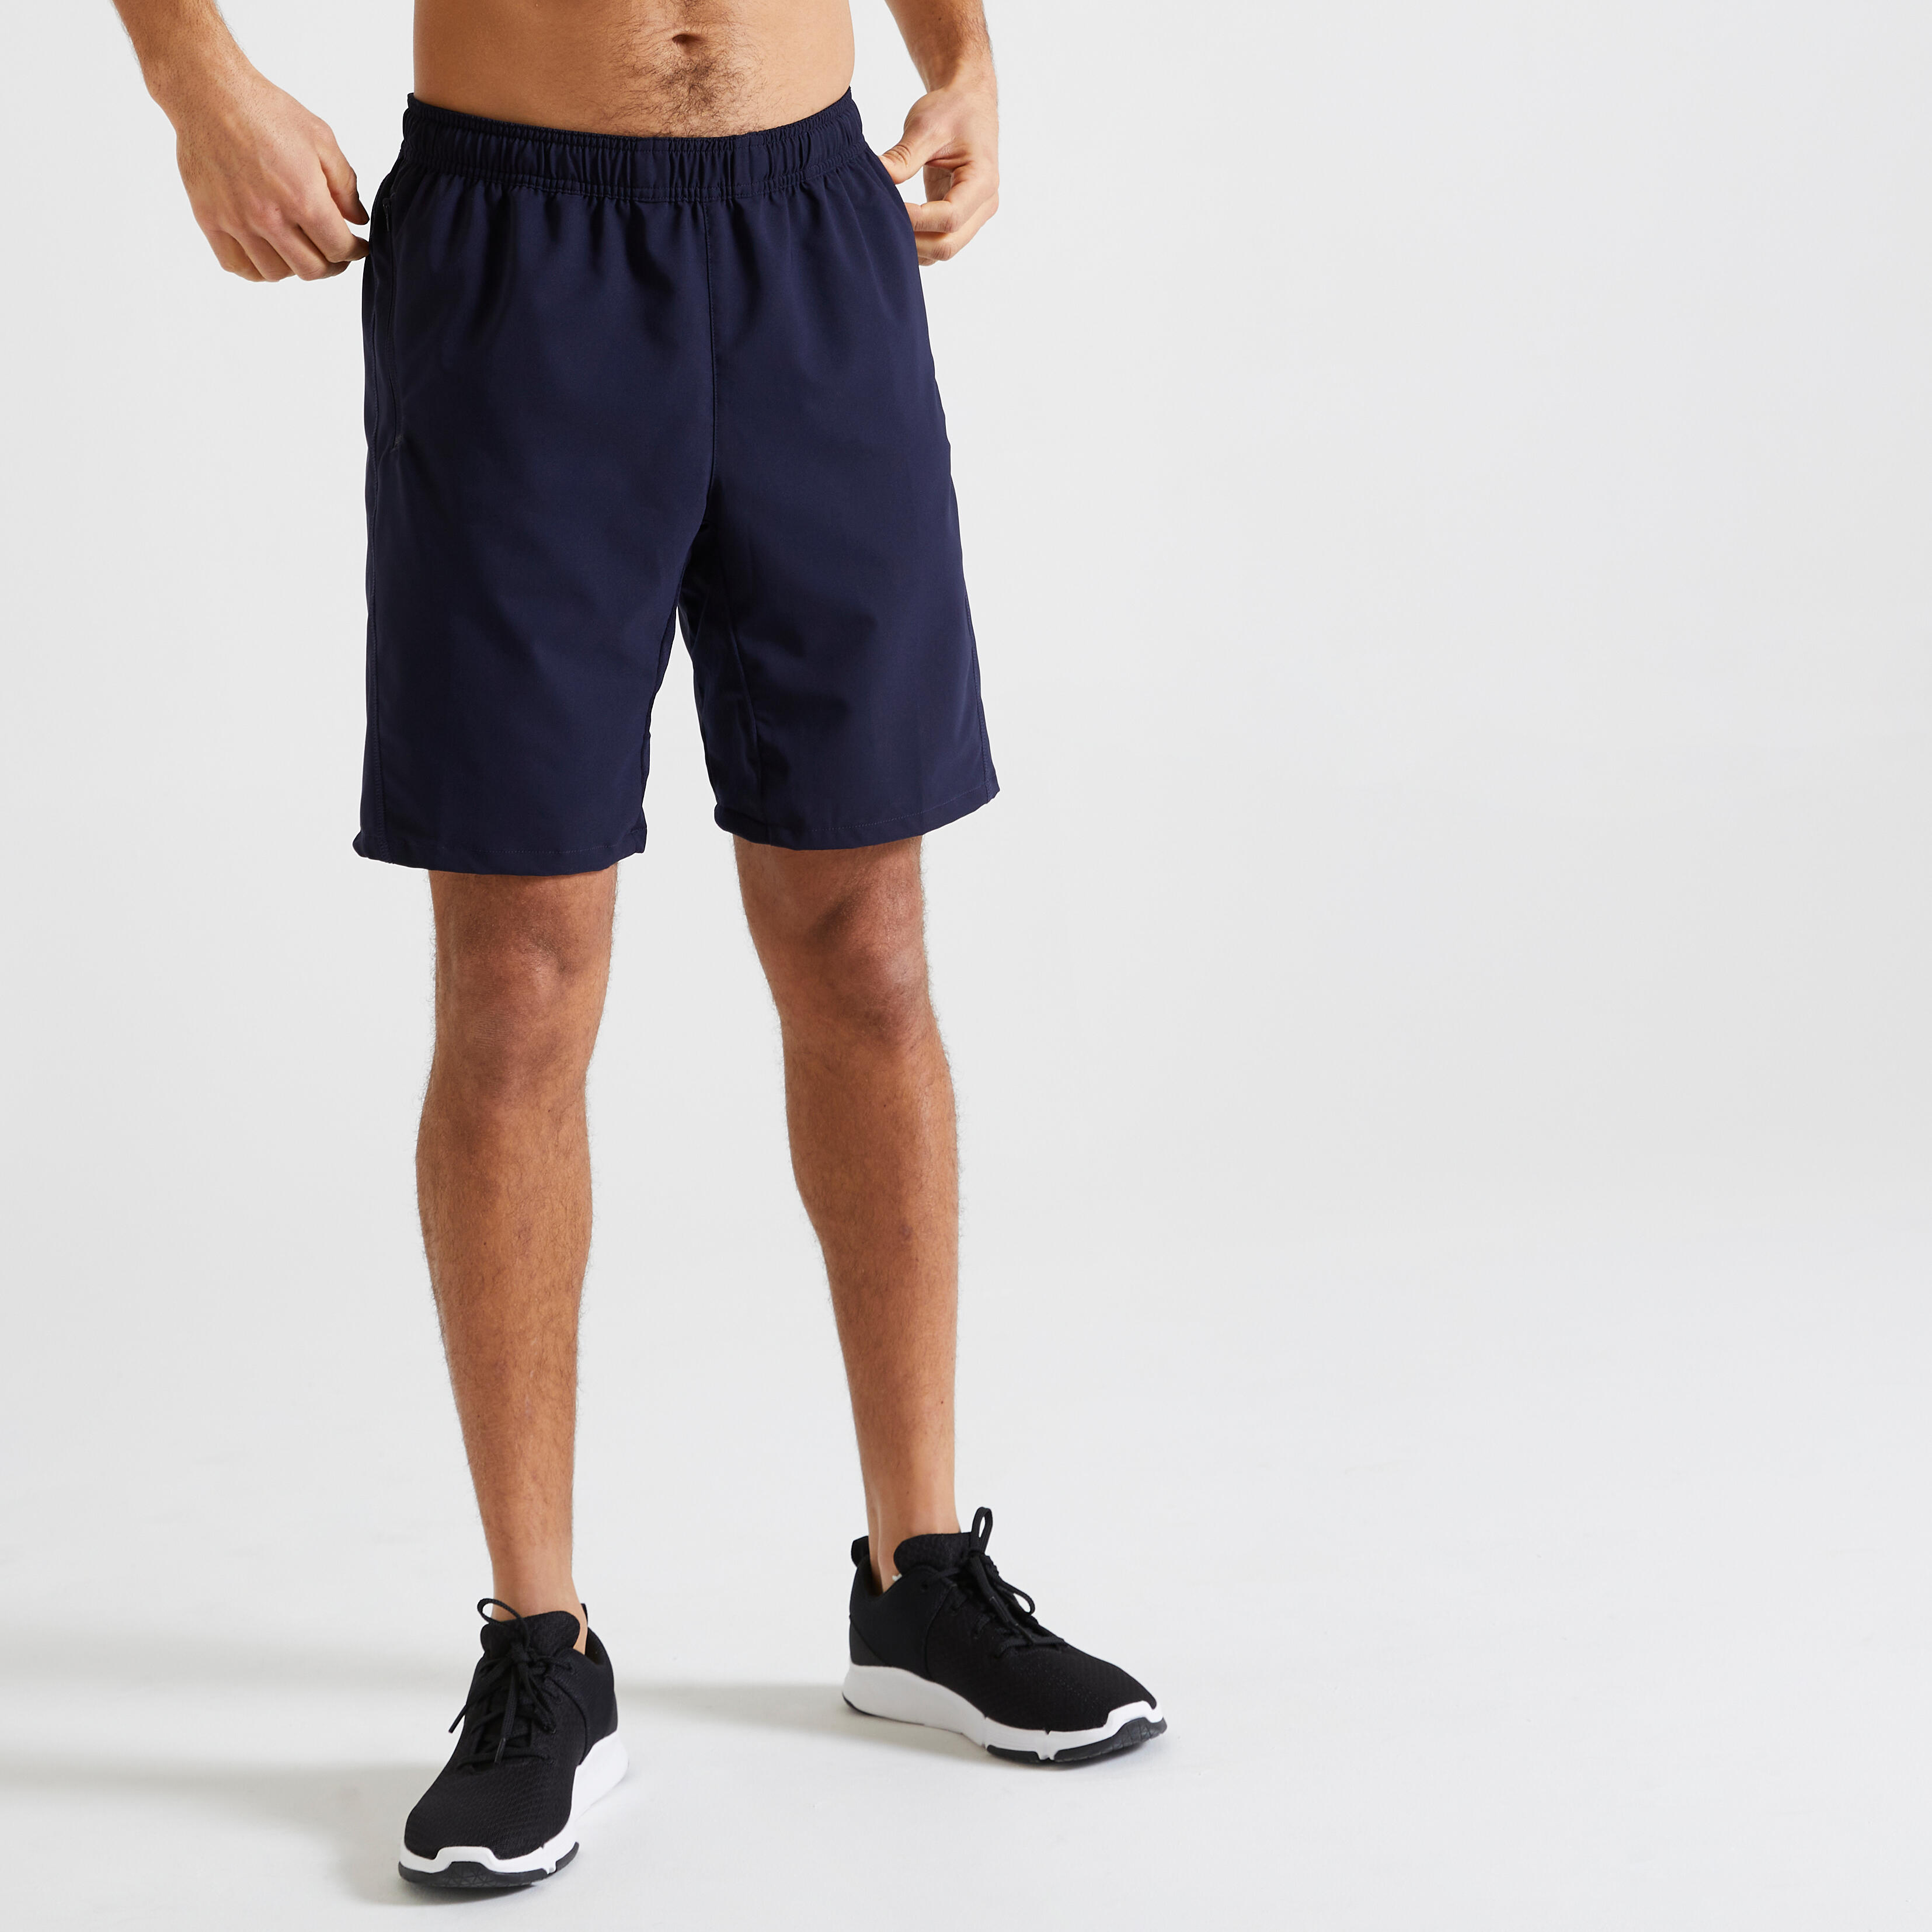 Pantalon scurt 120 fitness respirant cu buzunare cu fermoar bleumarin bărbați decathlon.ro